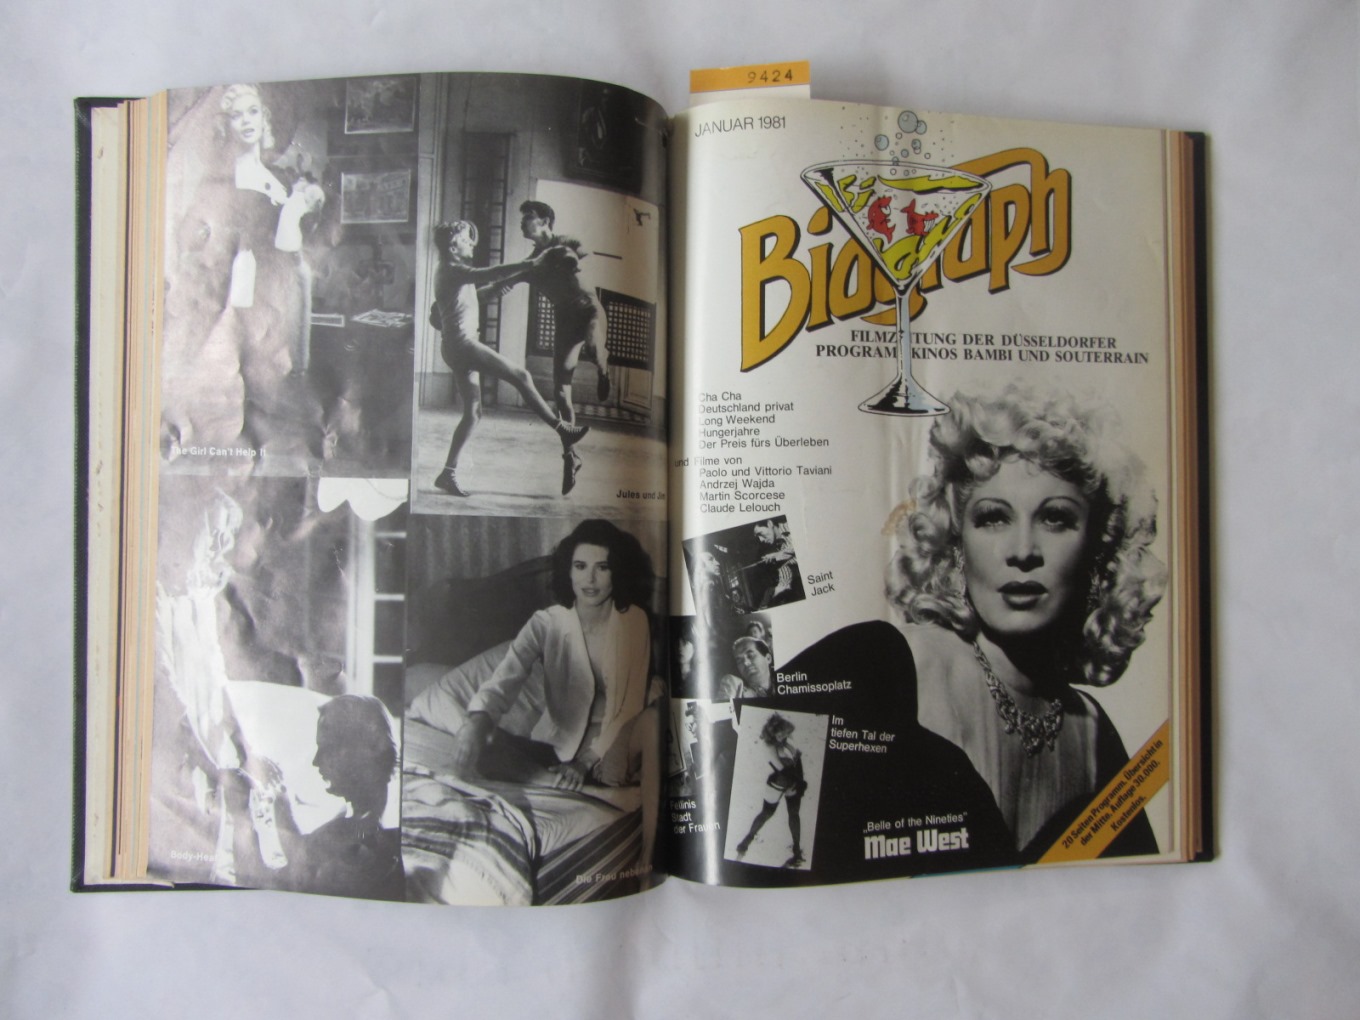   Biograph. Filmzeitung der Düsseldorfer Programmkinos Bambi und Souterrain. 20 Hefte von Nov. 1980 bis Juli/Aug. 1982 komplett. 